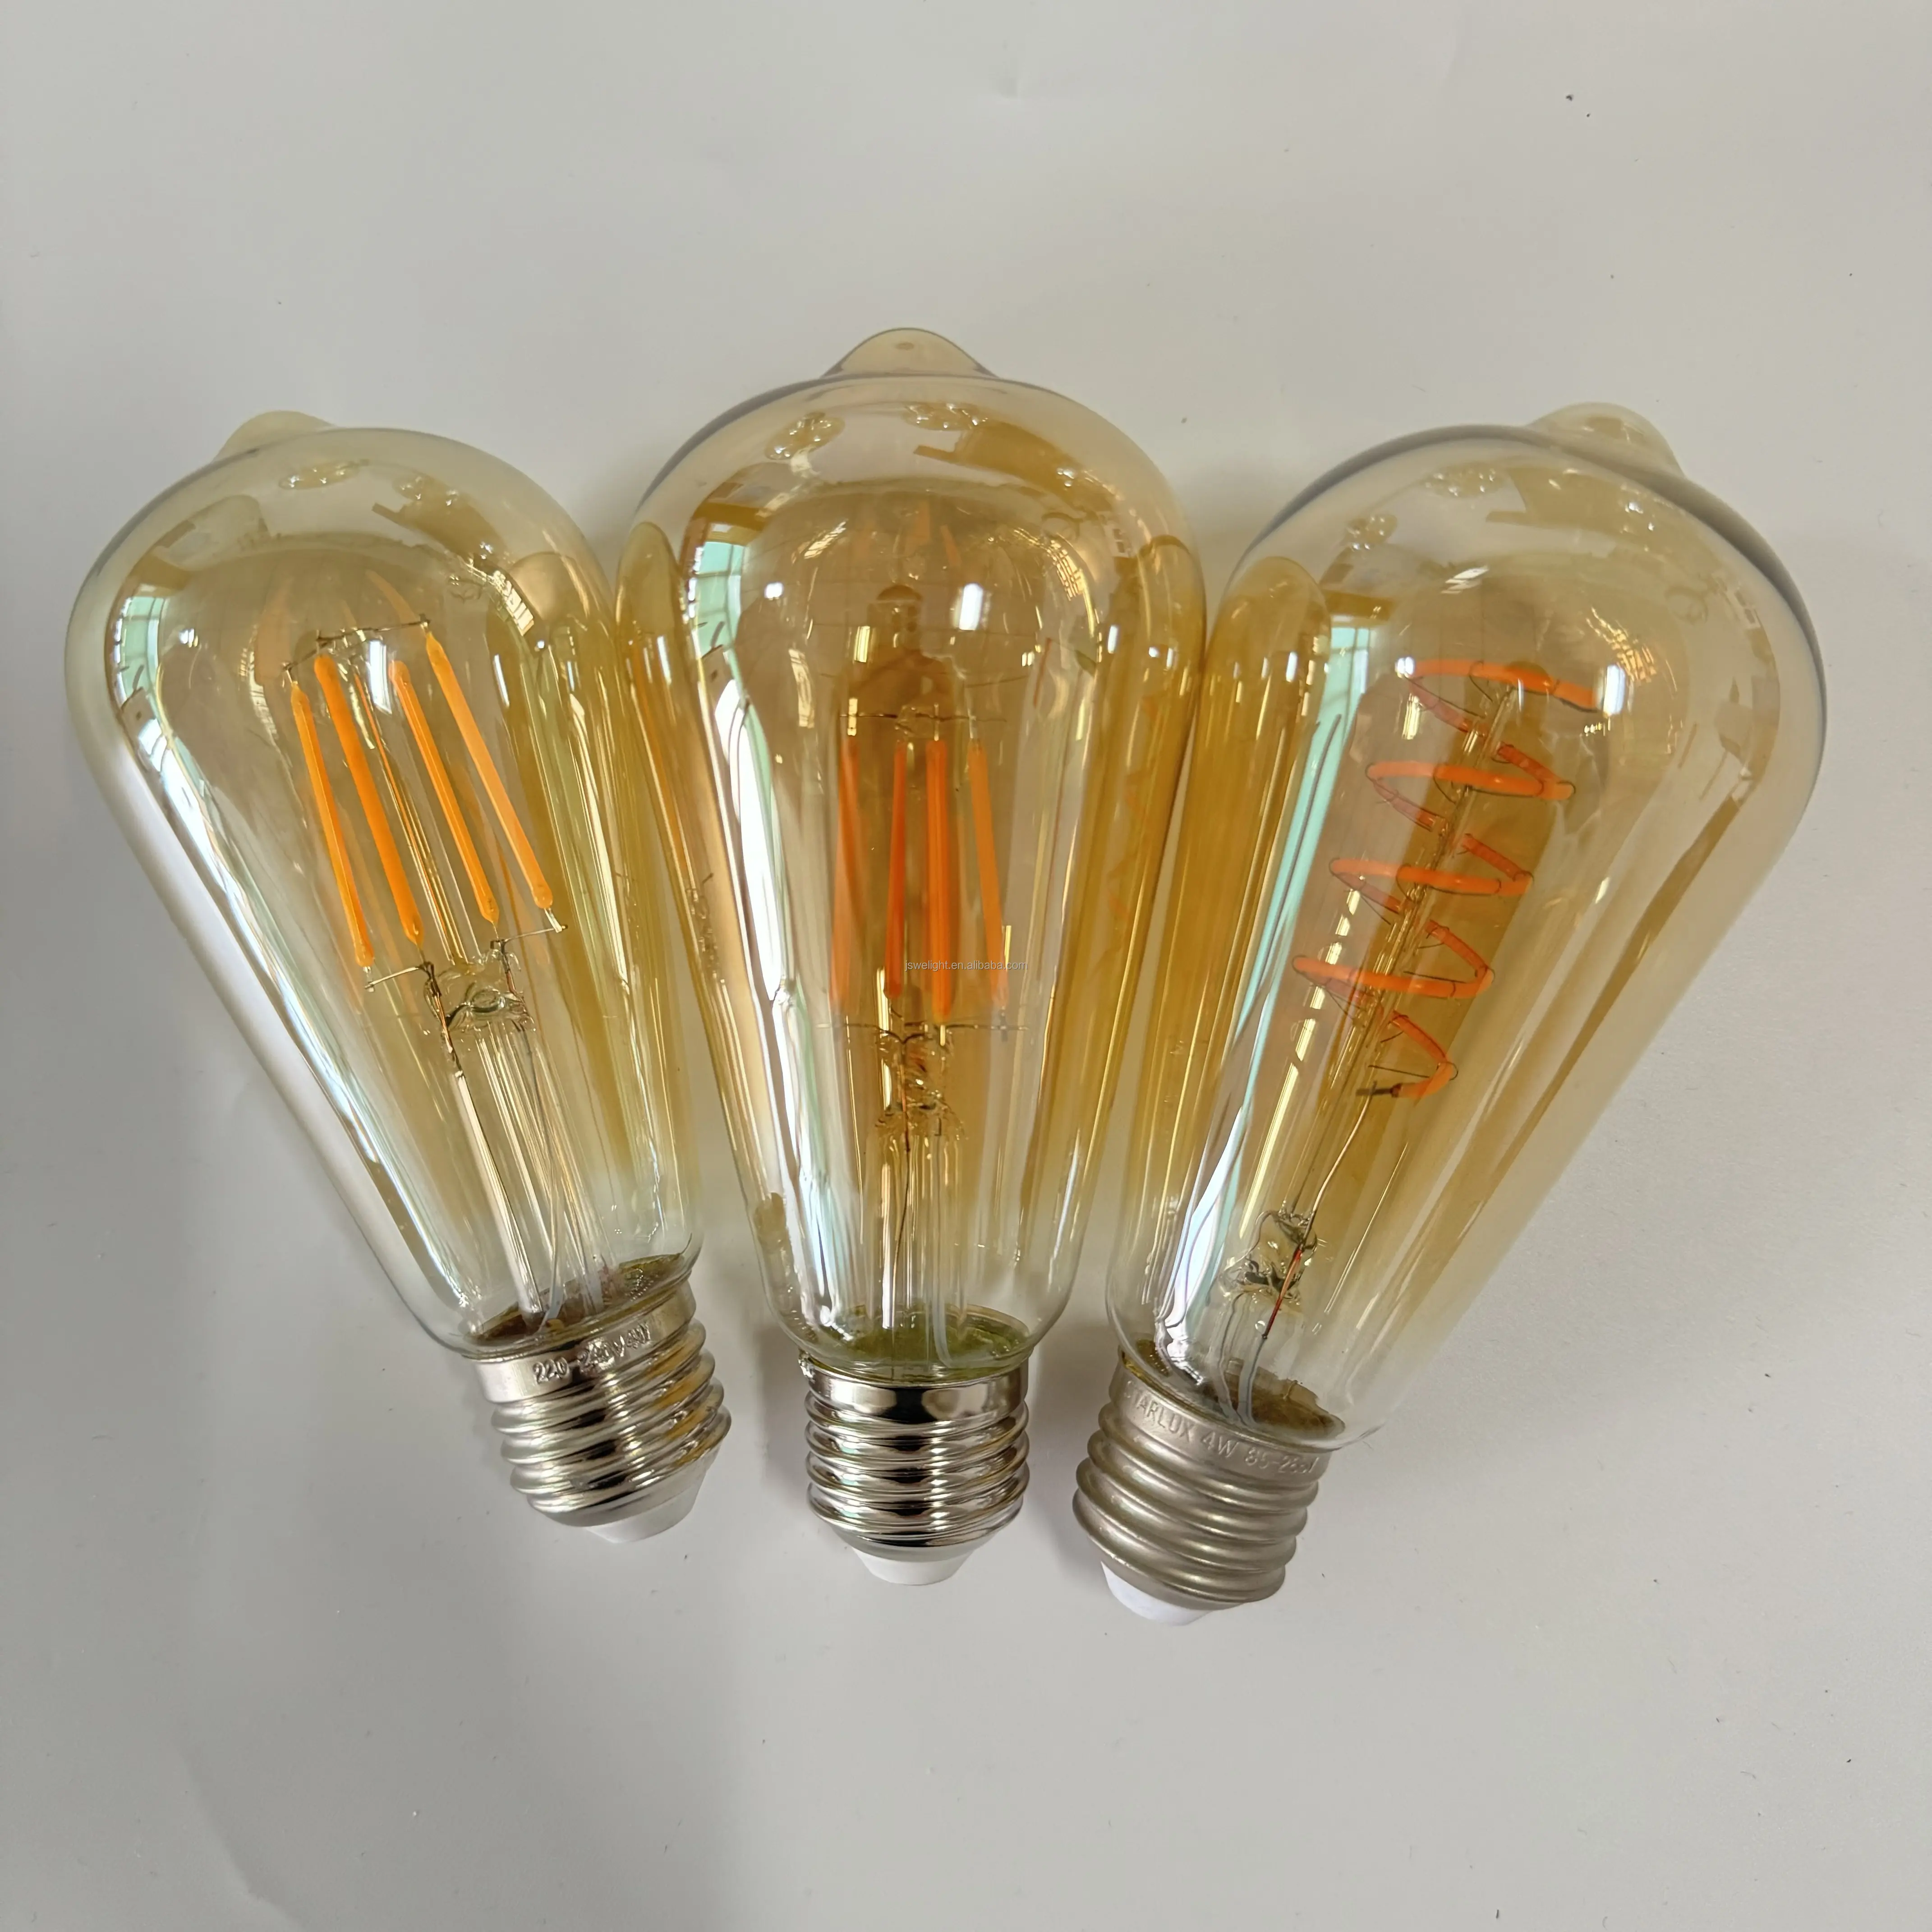 ST64 e27 220-240 В 2700k Светодиодные лампы молочно-янтарного цвета с прозрачным корпусом